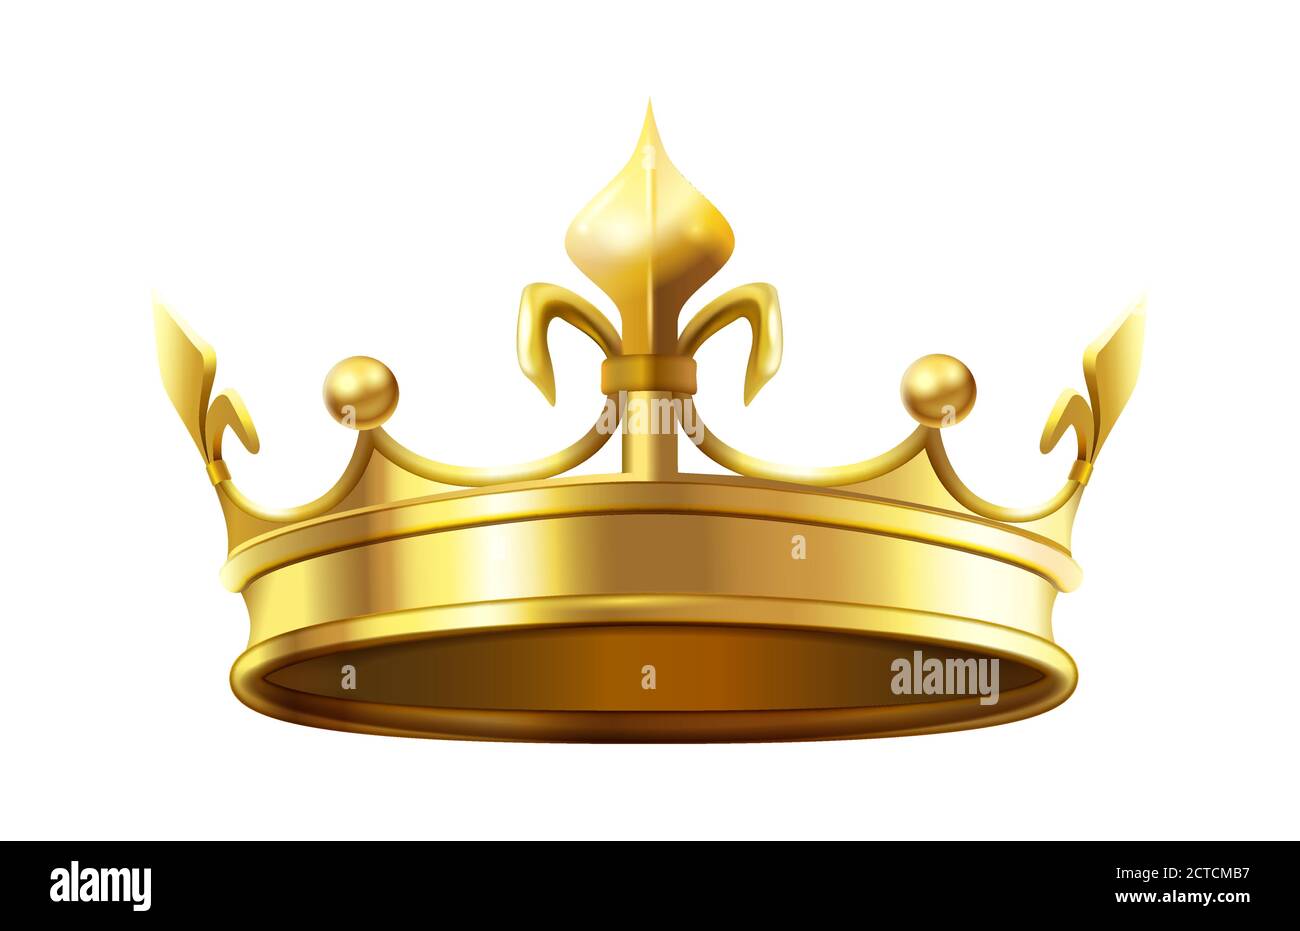 Königliche Krone für König und Königin. Königtum und Monarchie Autorität Symbol, heraldischen goldenen glänzenden Element. Luxus 3d Zubehör für Prinz oder Prinzessin isola Stock Vektor